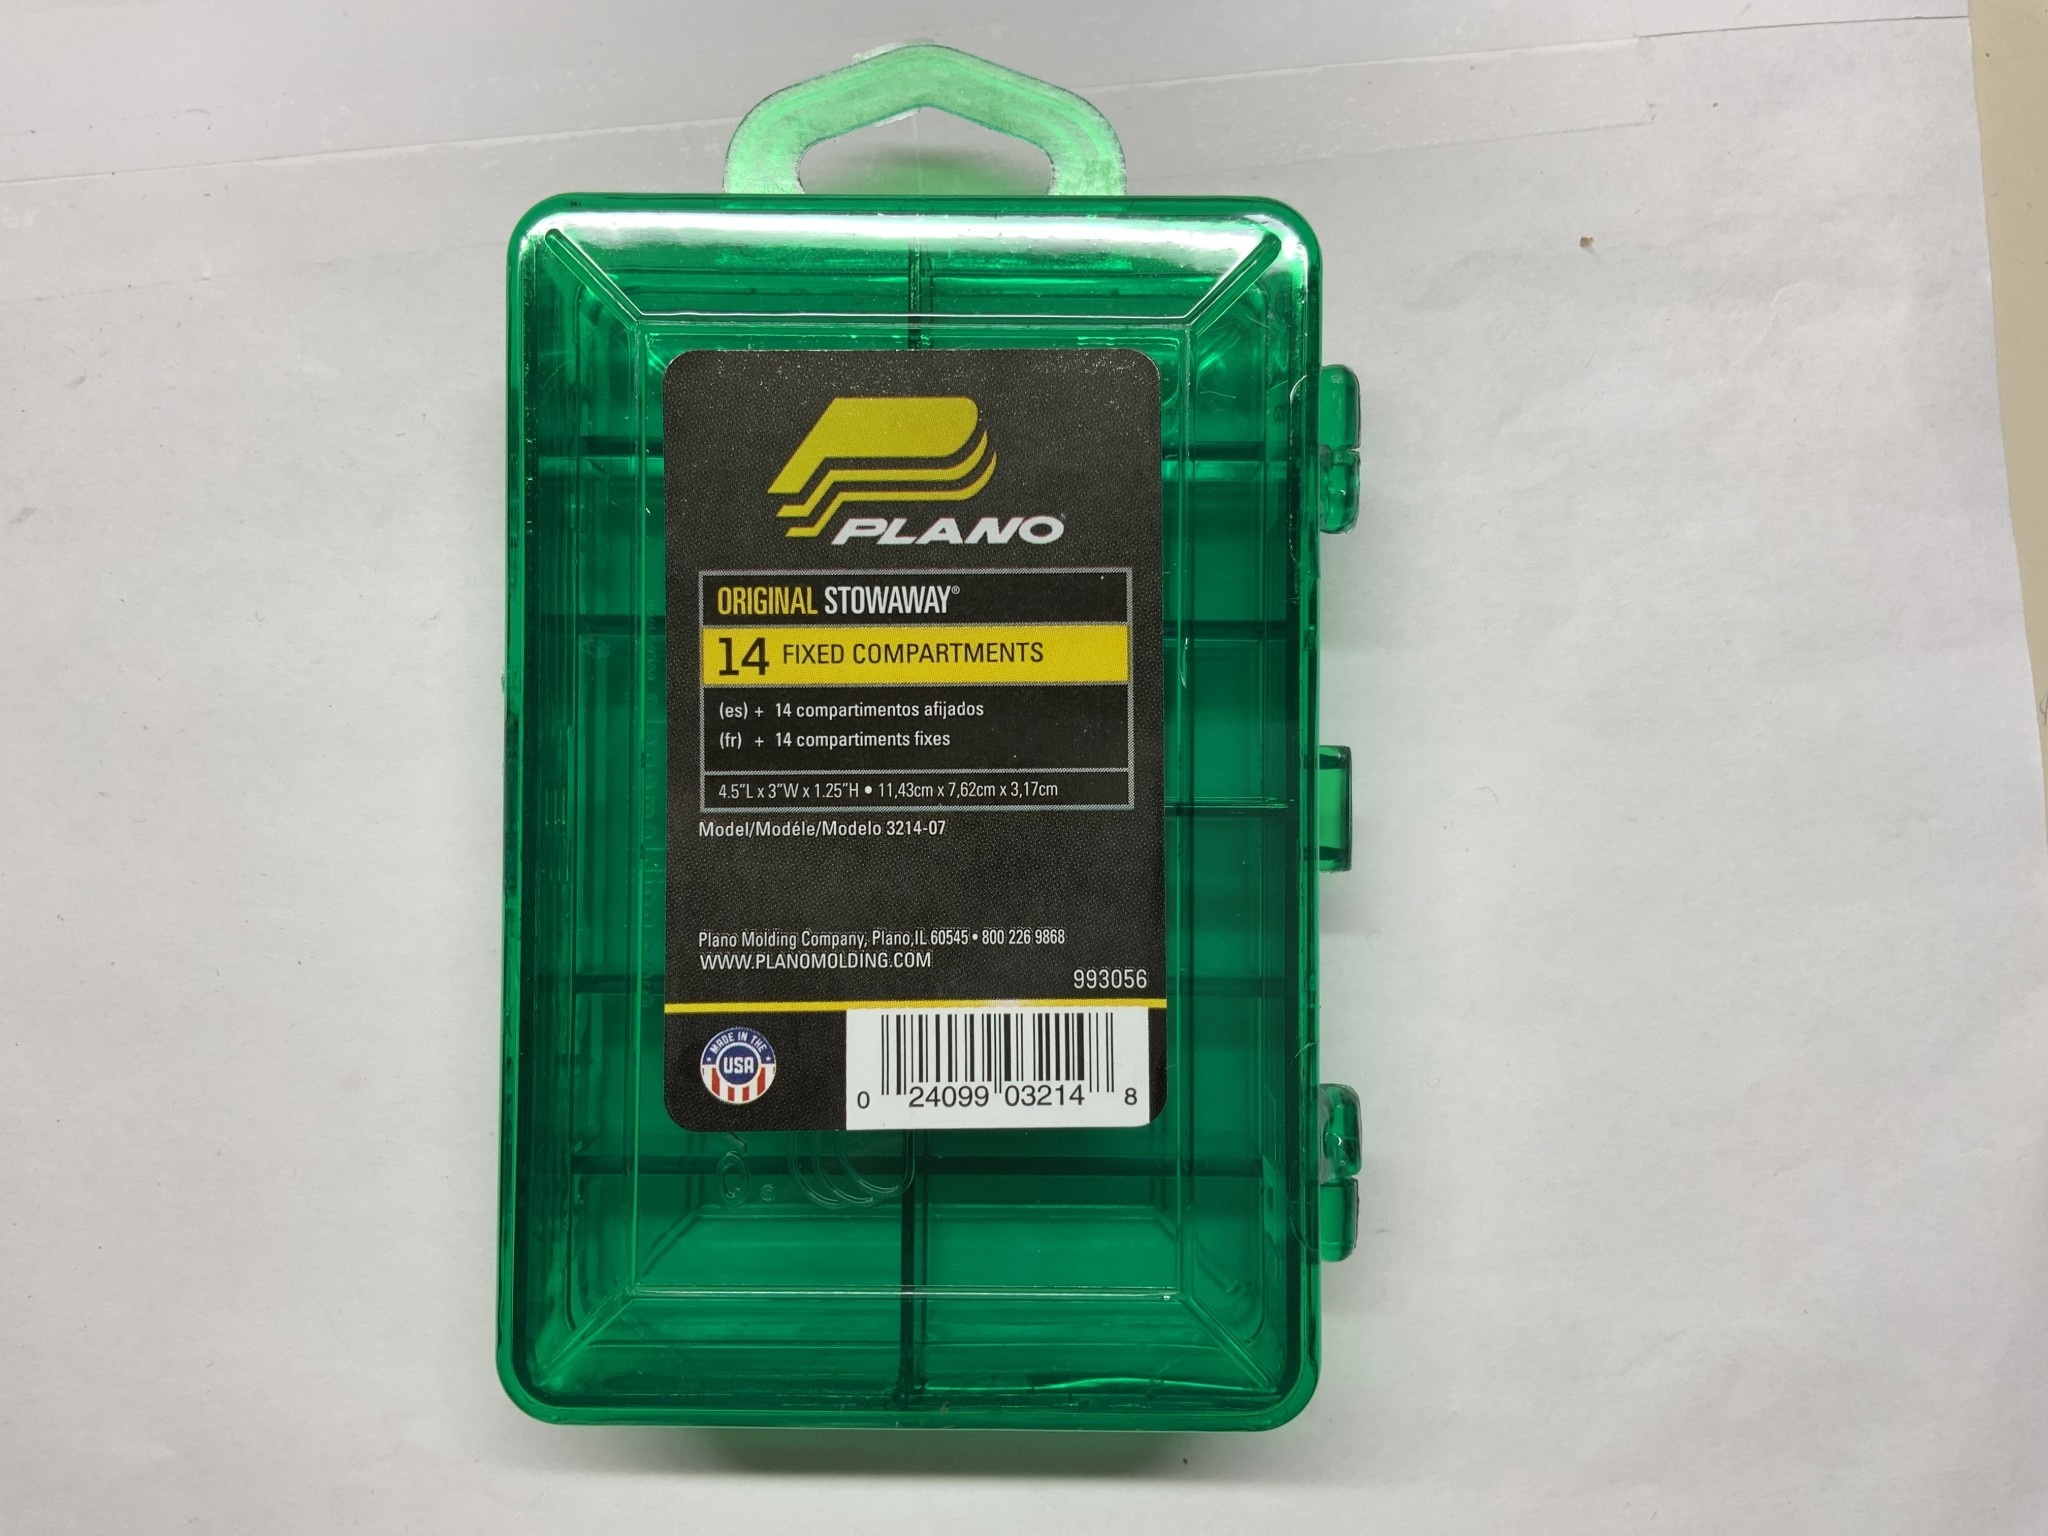 PLANO MAGNUM TACKLE BOX MICRO MAG 4.5*3*4.25' GREEN